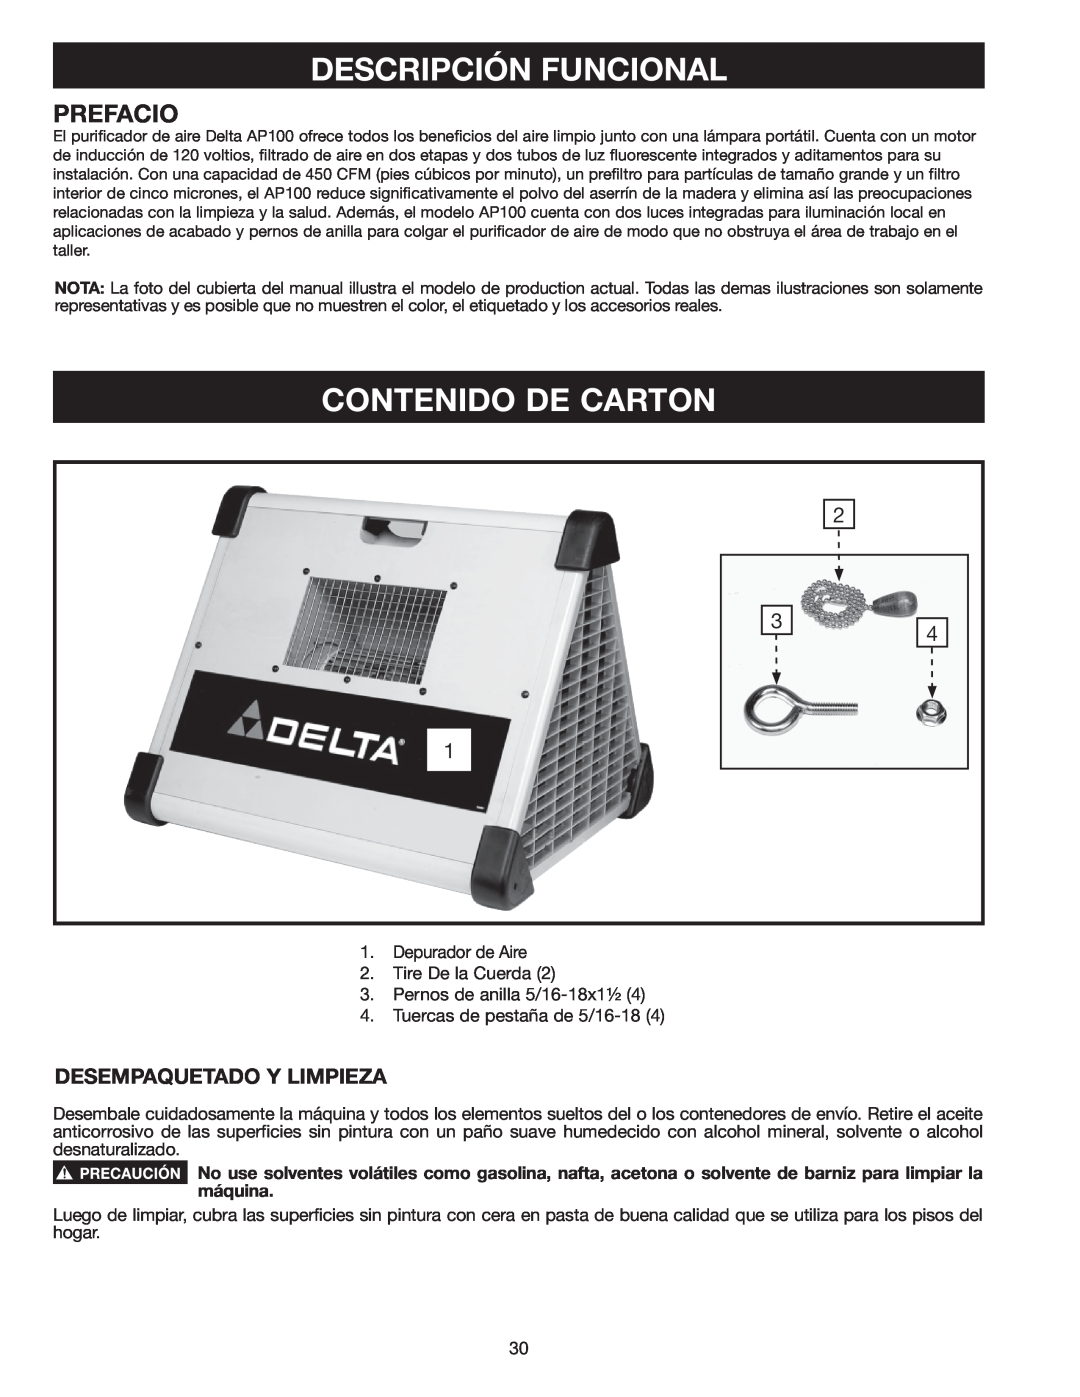 Delta AP-100 instruction manual Descripción Funcional, Contenido De Carton, Prefacio, Desempaquetado Y Limpieza 